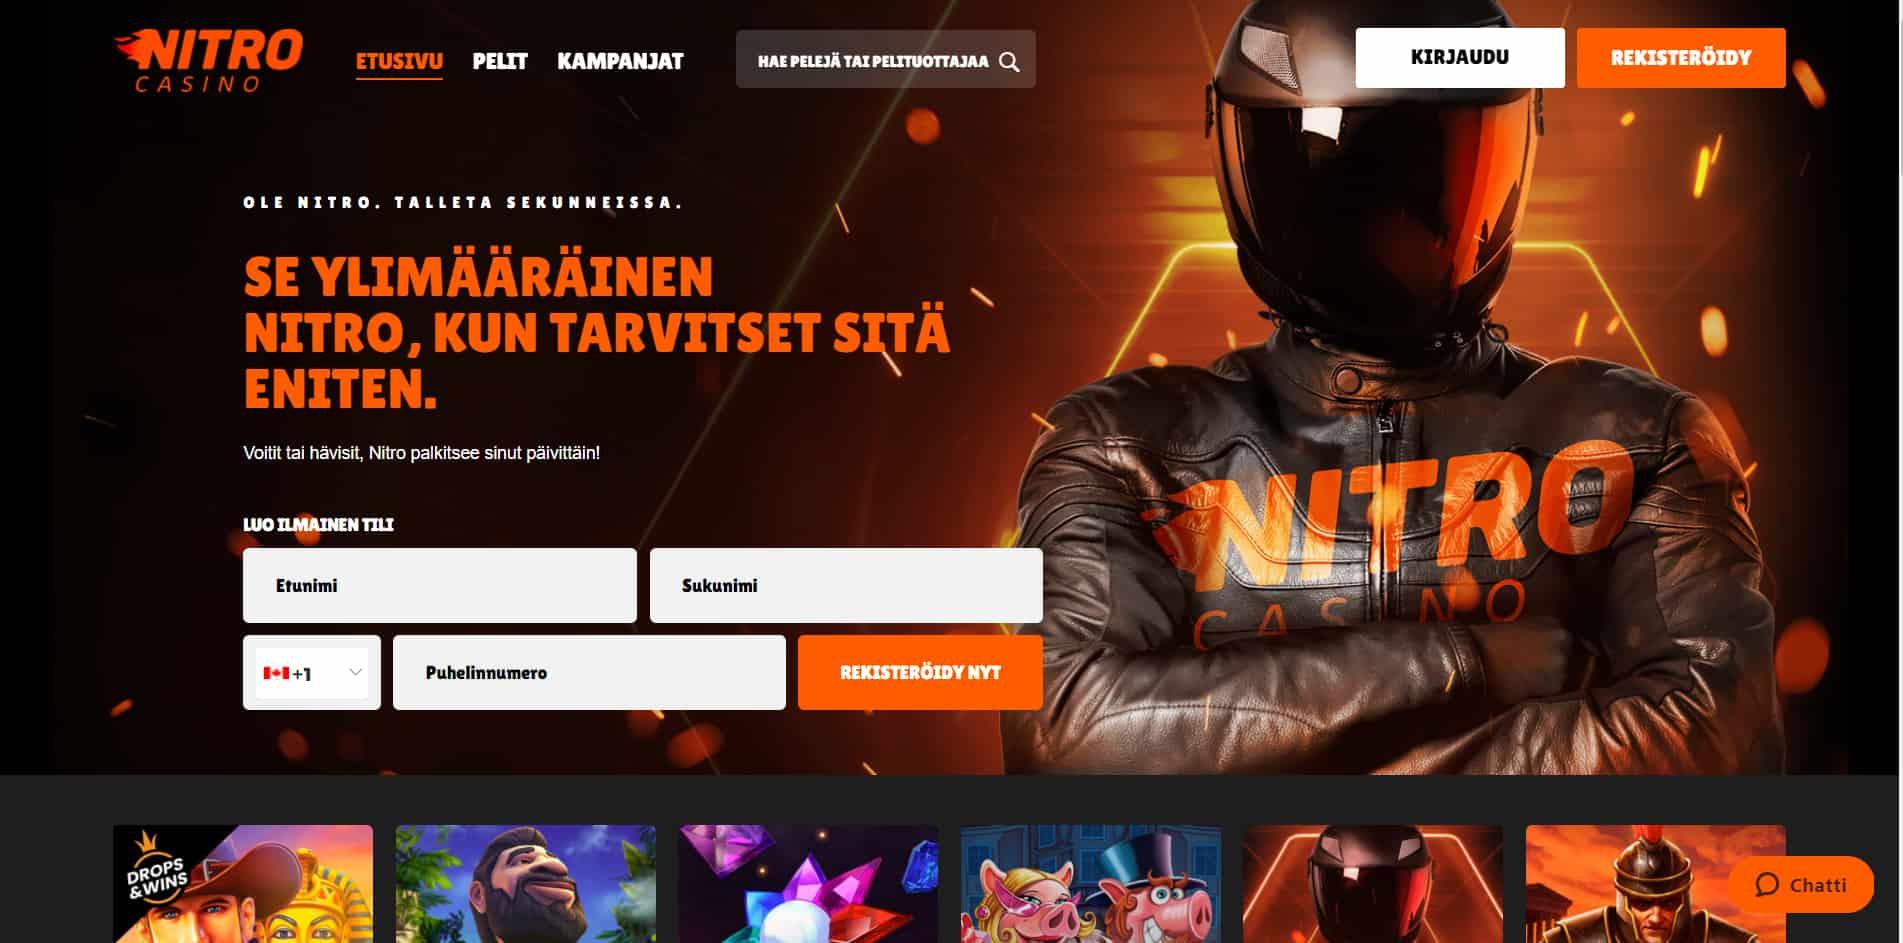 Nitro casino homepage